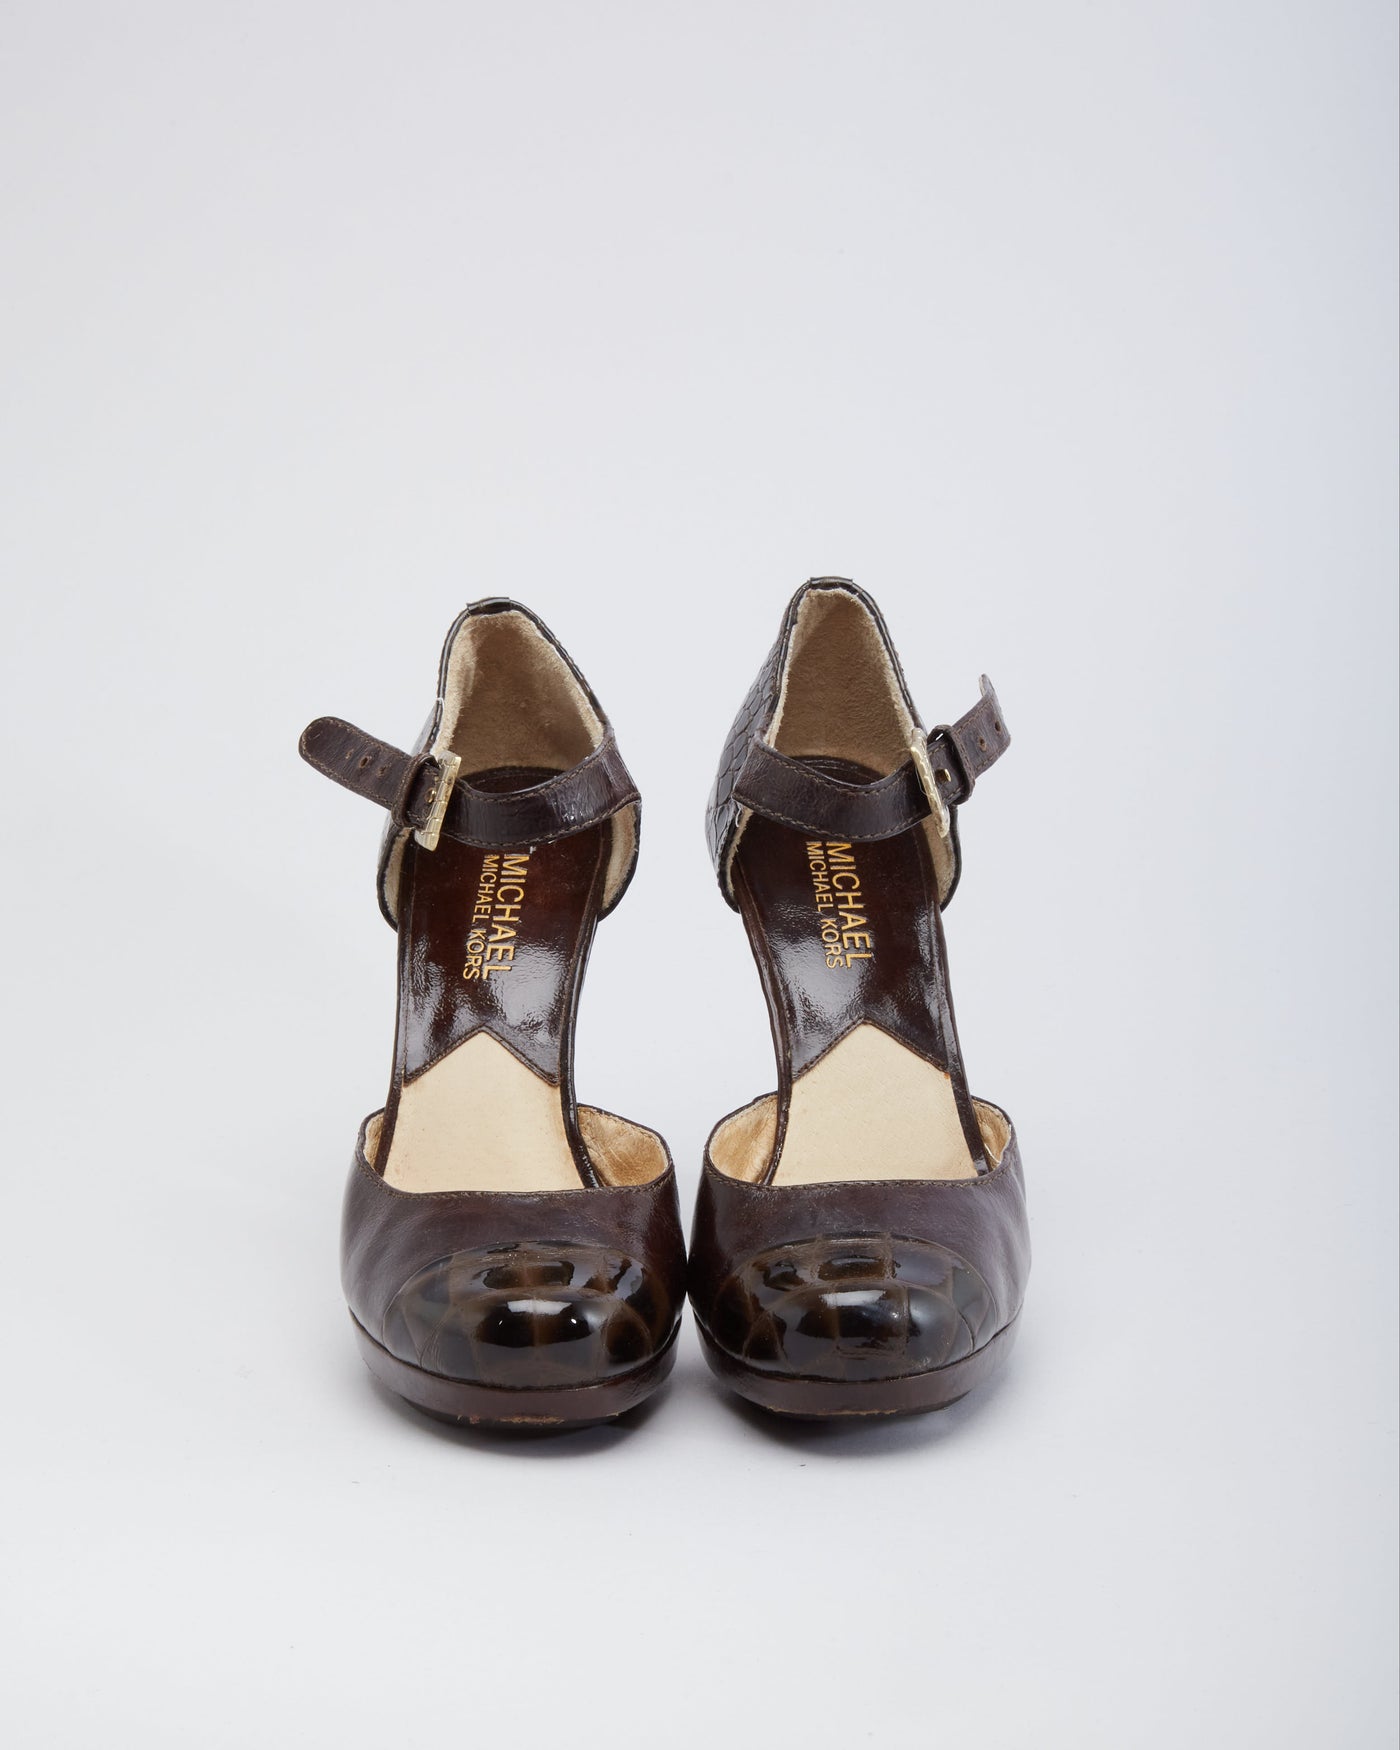 Michael Kors Brown Croc Leather Heel Sandals  - UK 3